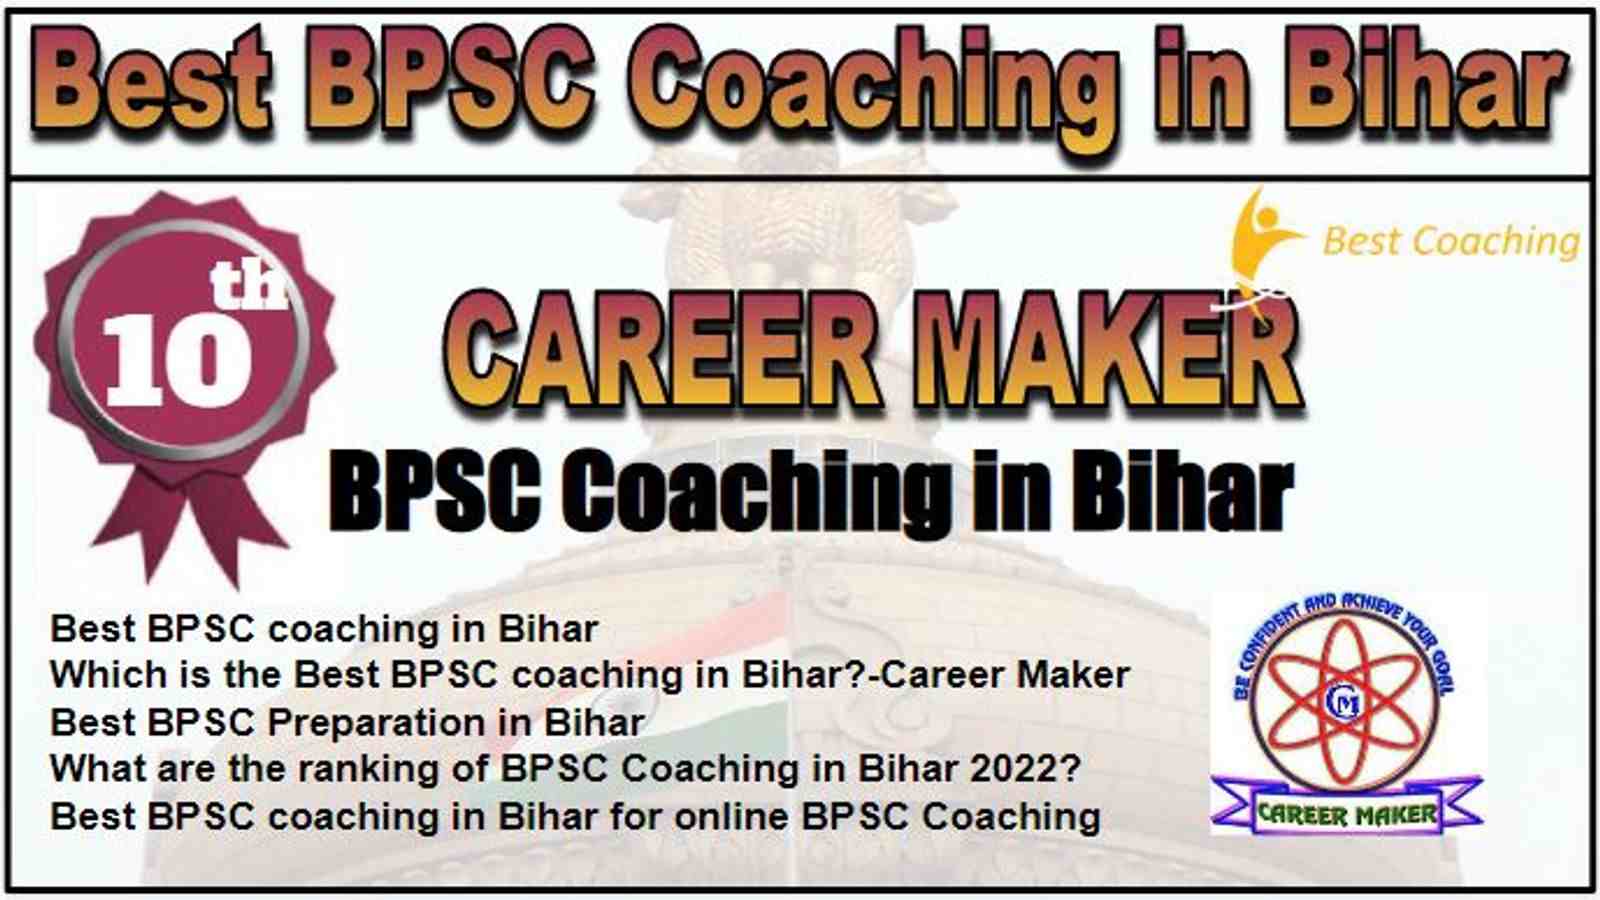 Rank 10 Best BPSC Coaching in Bihar